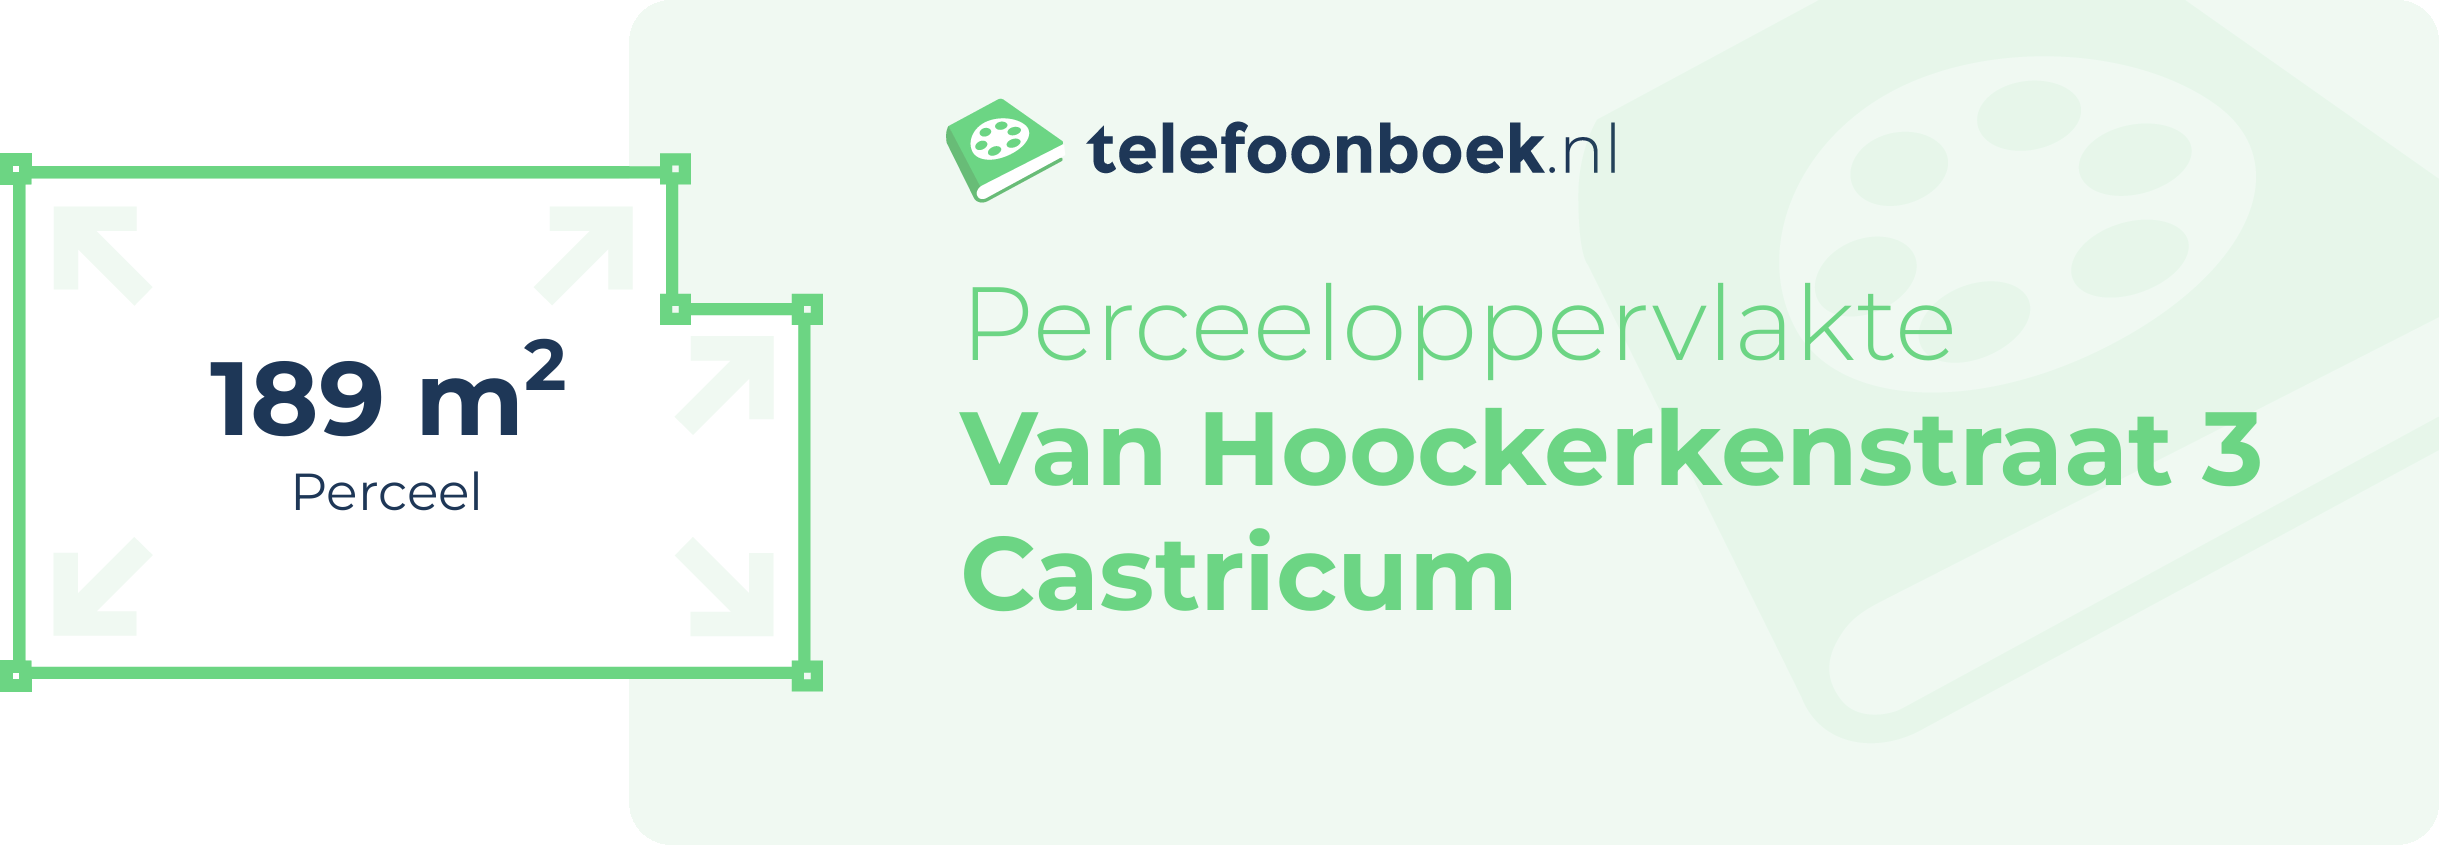 Perceeloppervlakte Van Hoockerkenstraat 3 Castricum